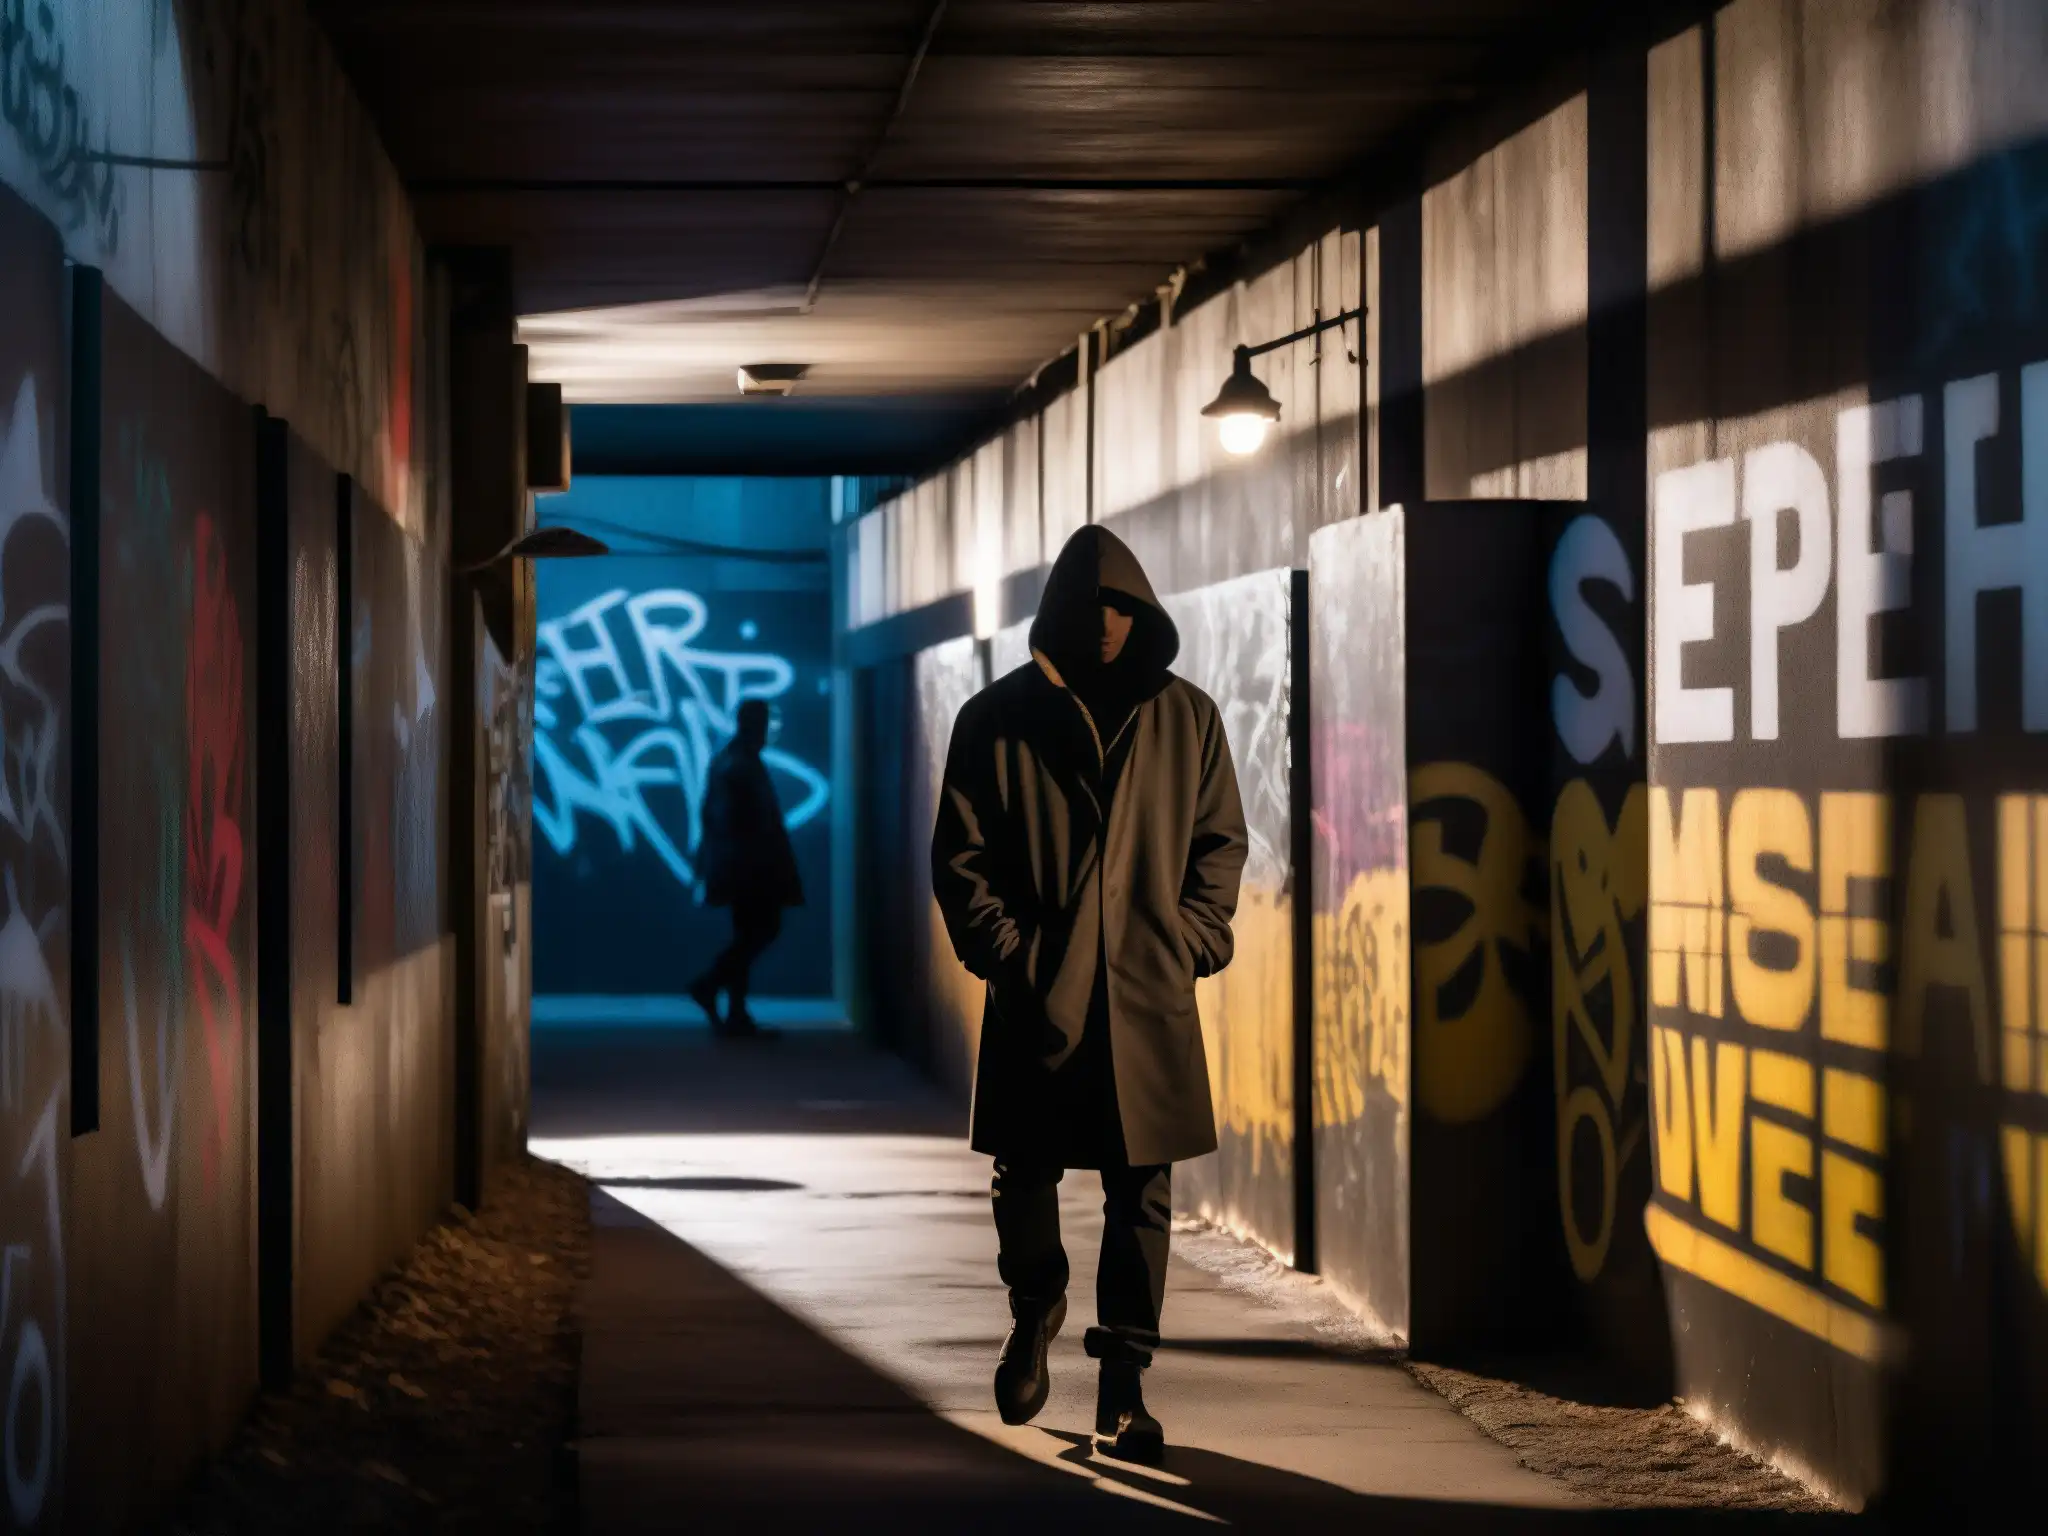 Un oscuro callejón con graffiti amenazantes y figuras misteriosas